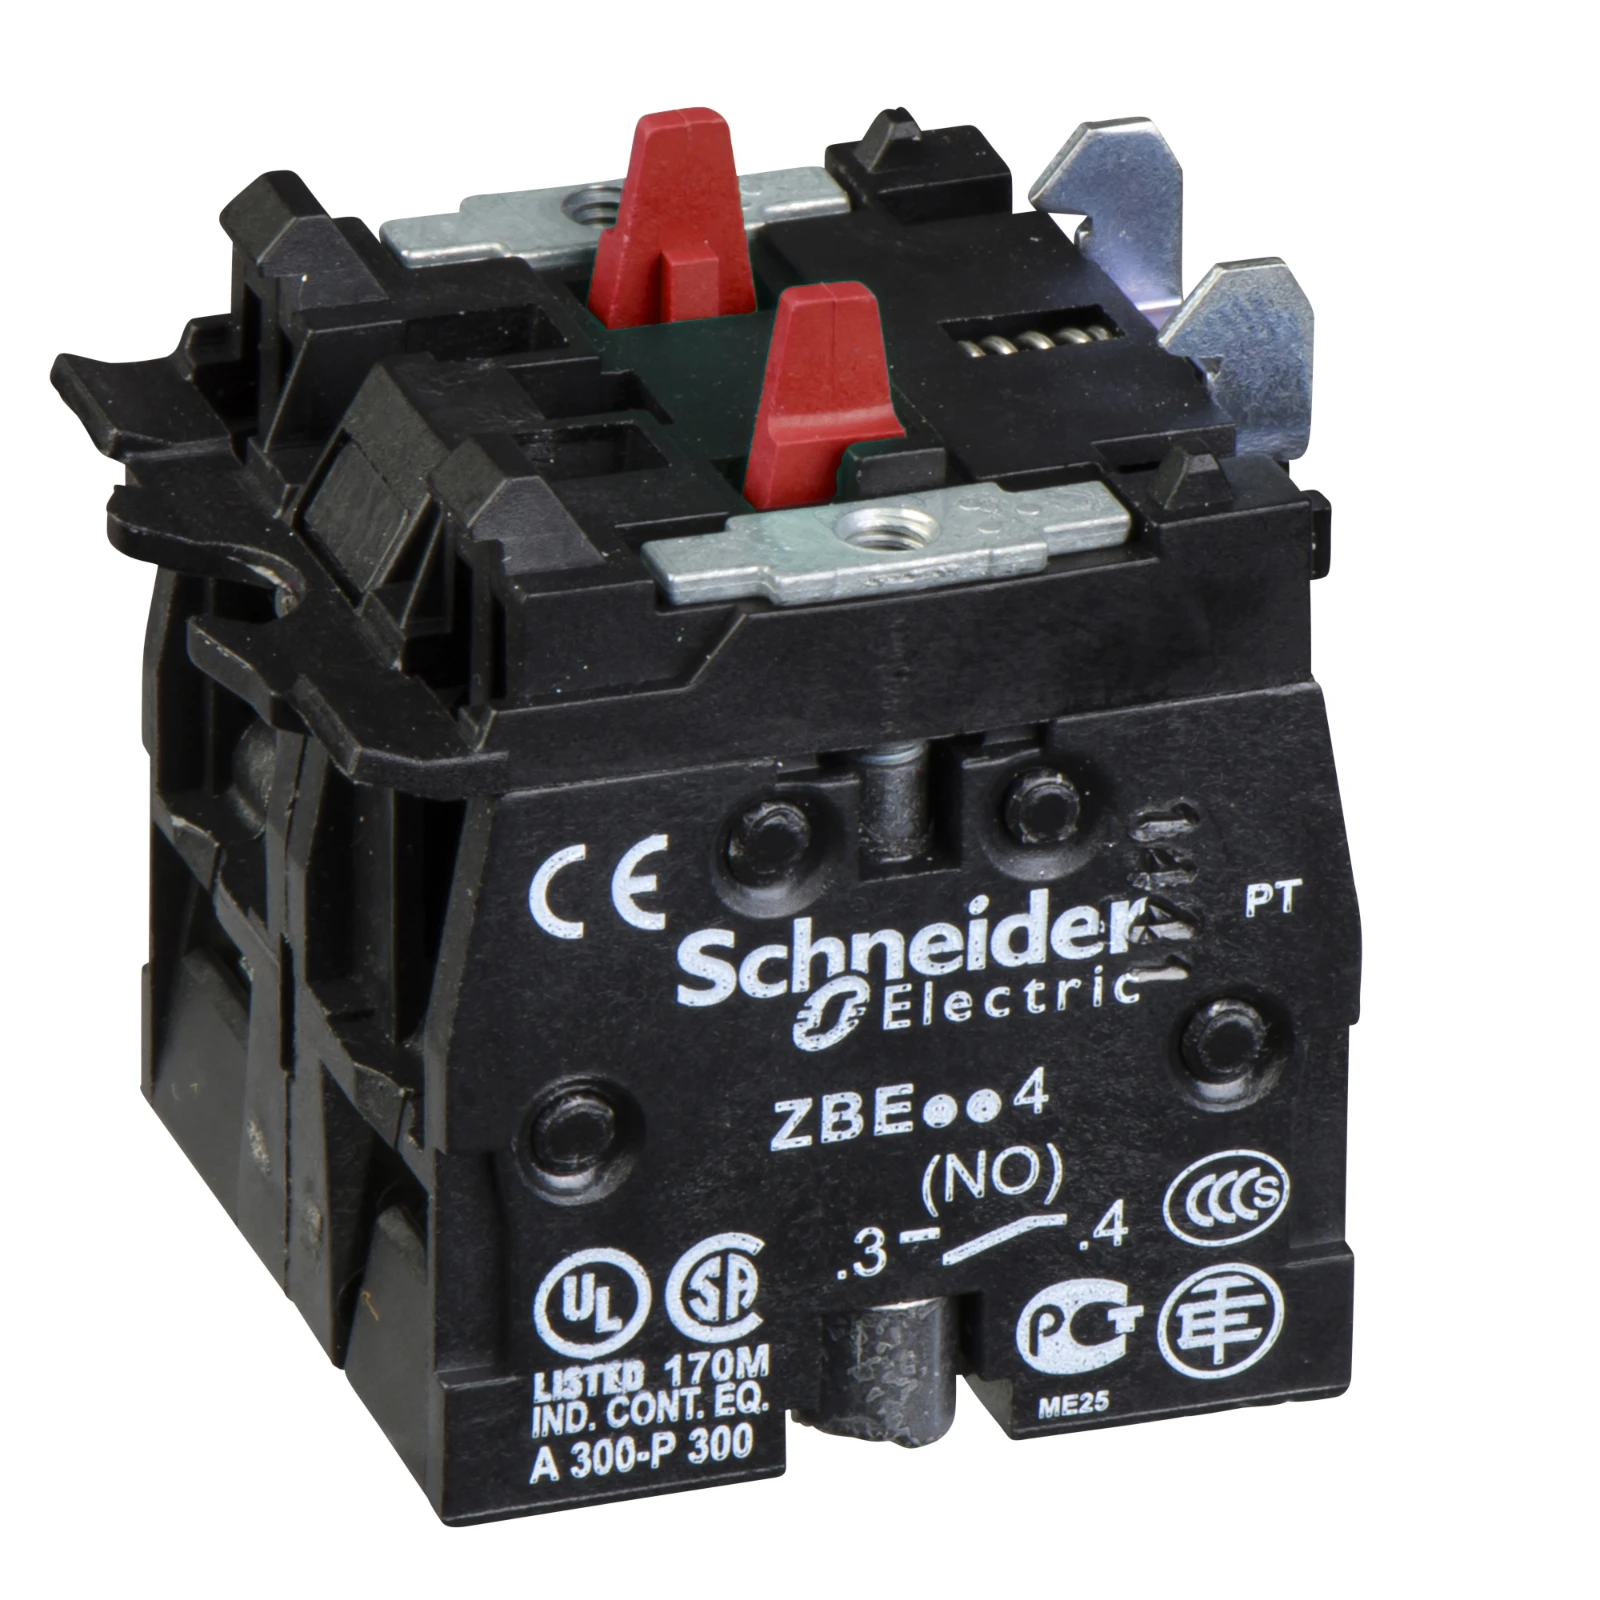 2475468 - Schneider Electric ZBE504